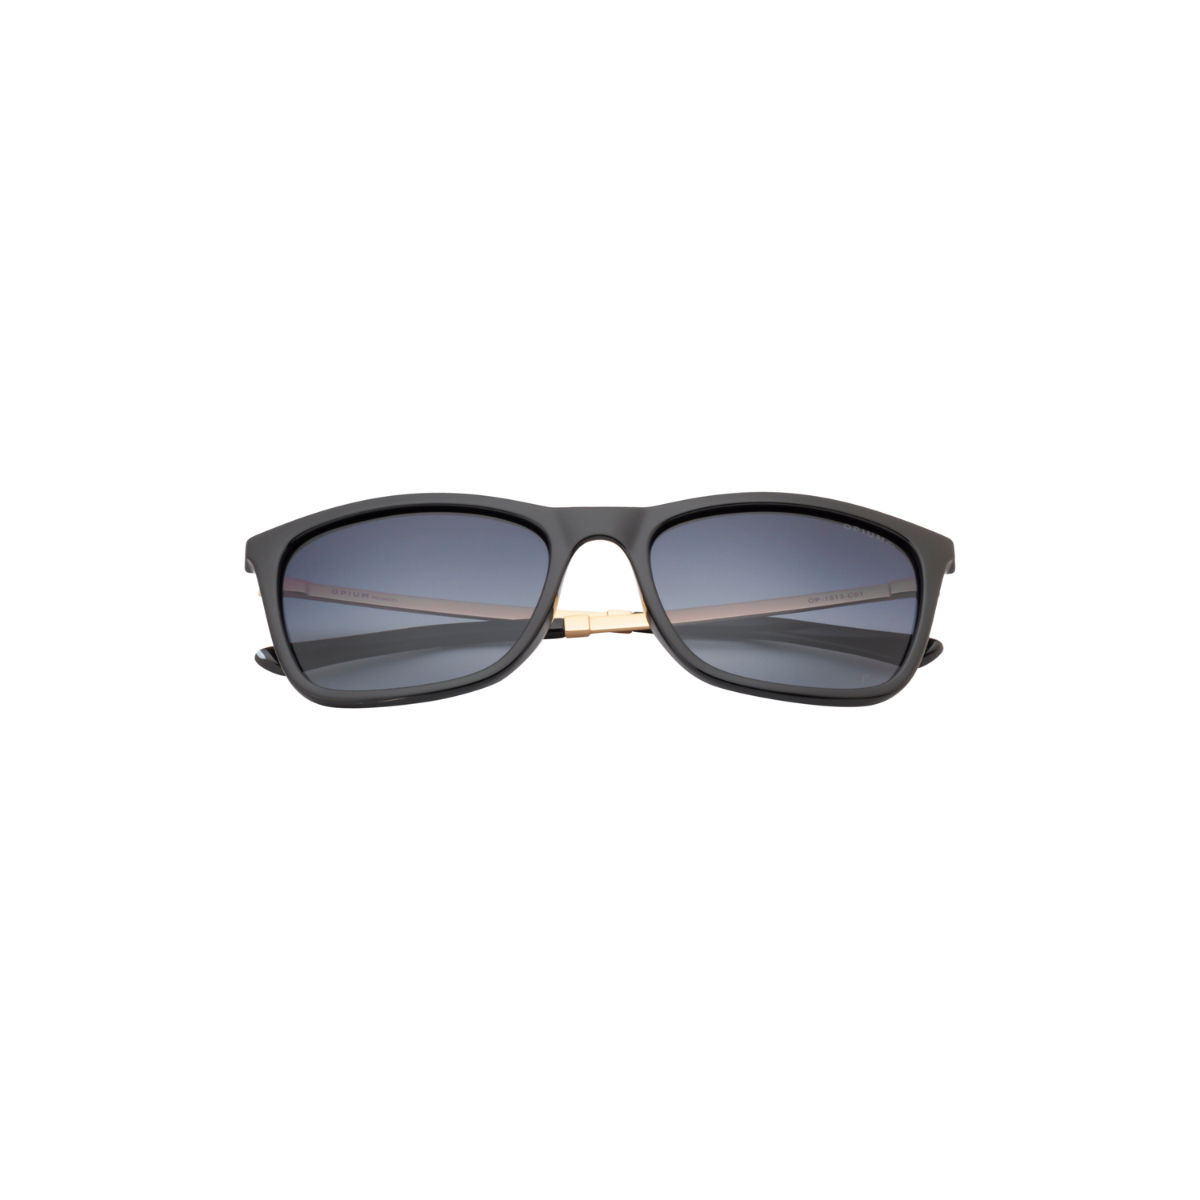 Buy Opium Eyewear Polarized Wayfarer Sunglasses (OP-1513-C01) Online